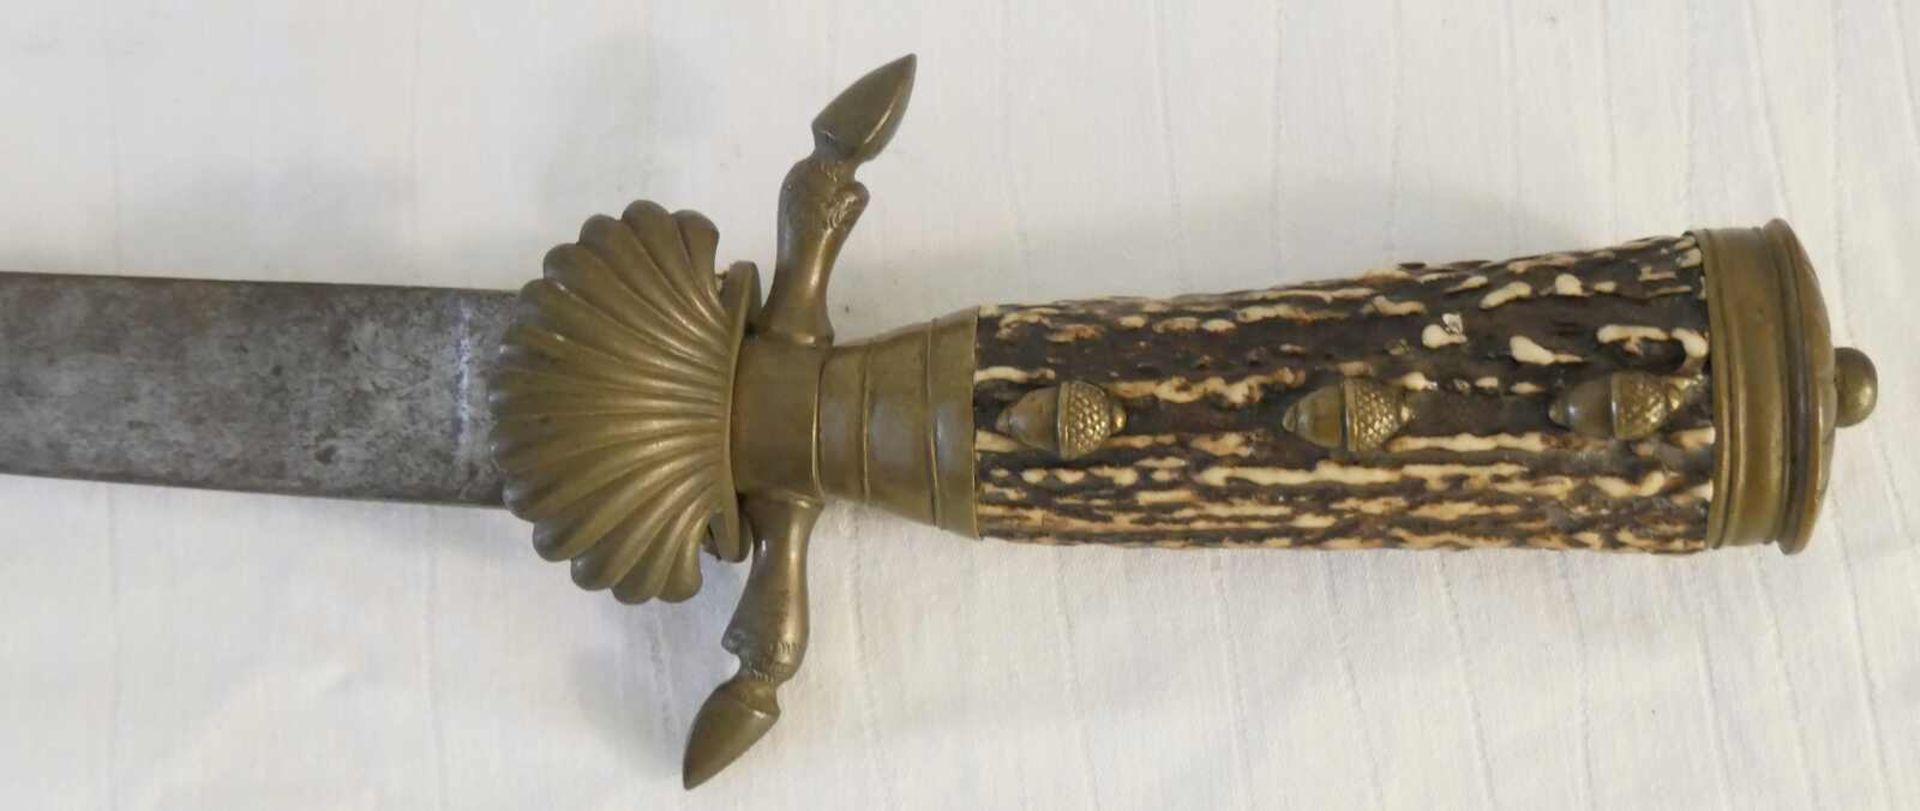 Original Hirschfänger mit langer Klinge, Horngriff mit Bronzeeicheln. Ohne Scheide. Gesamtlänge - Bild 2 aus 3